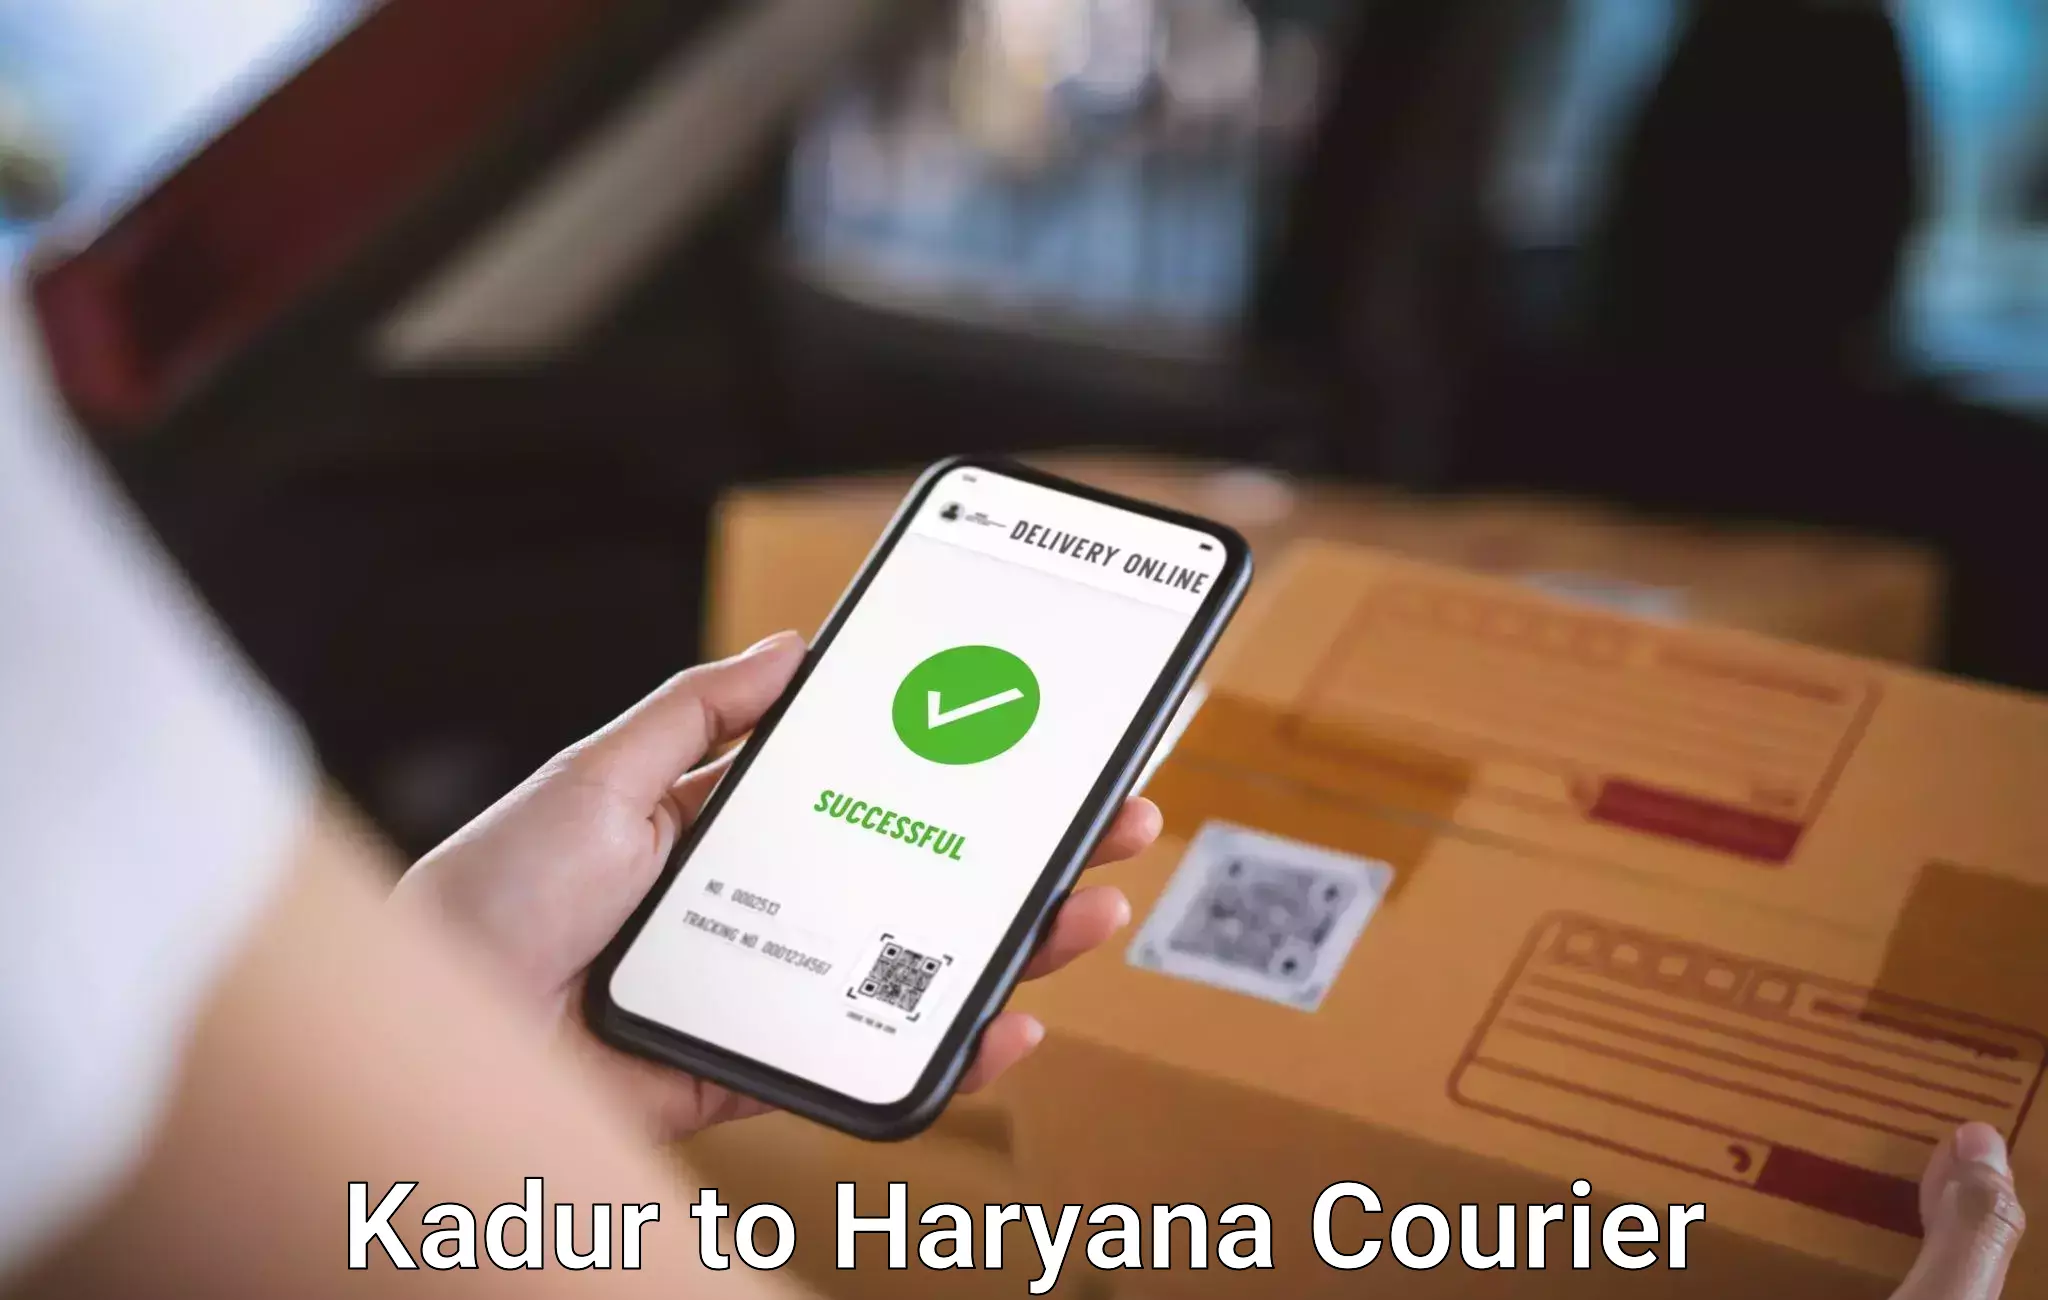 Luggage transport service Kadur to Haryana